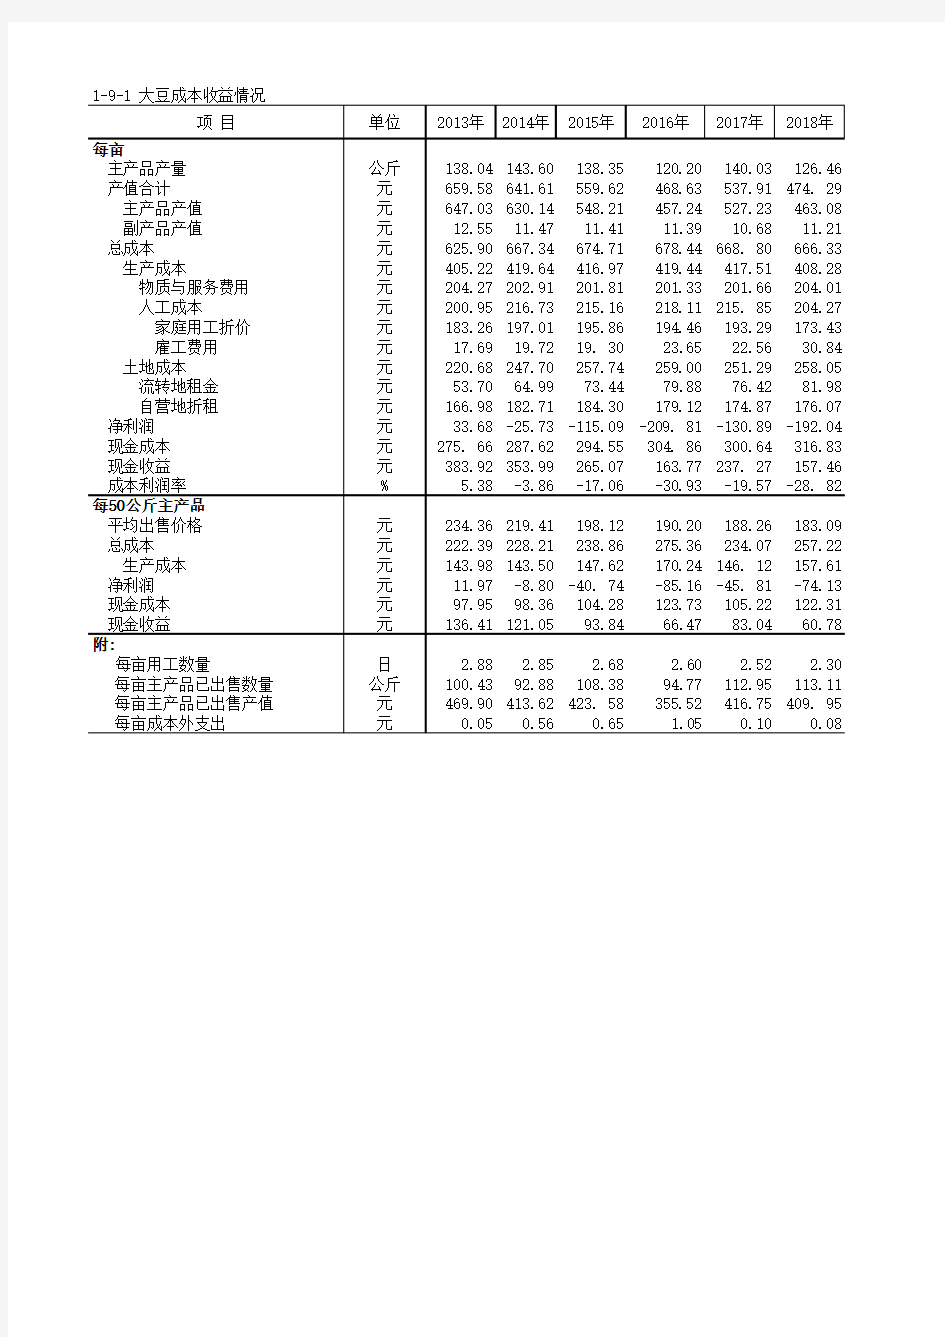 全国农产品成本收益各省市自治区统计数据：1-9-1 大豆成本收益情况(2013-2018)